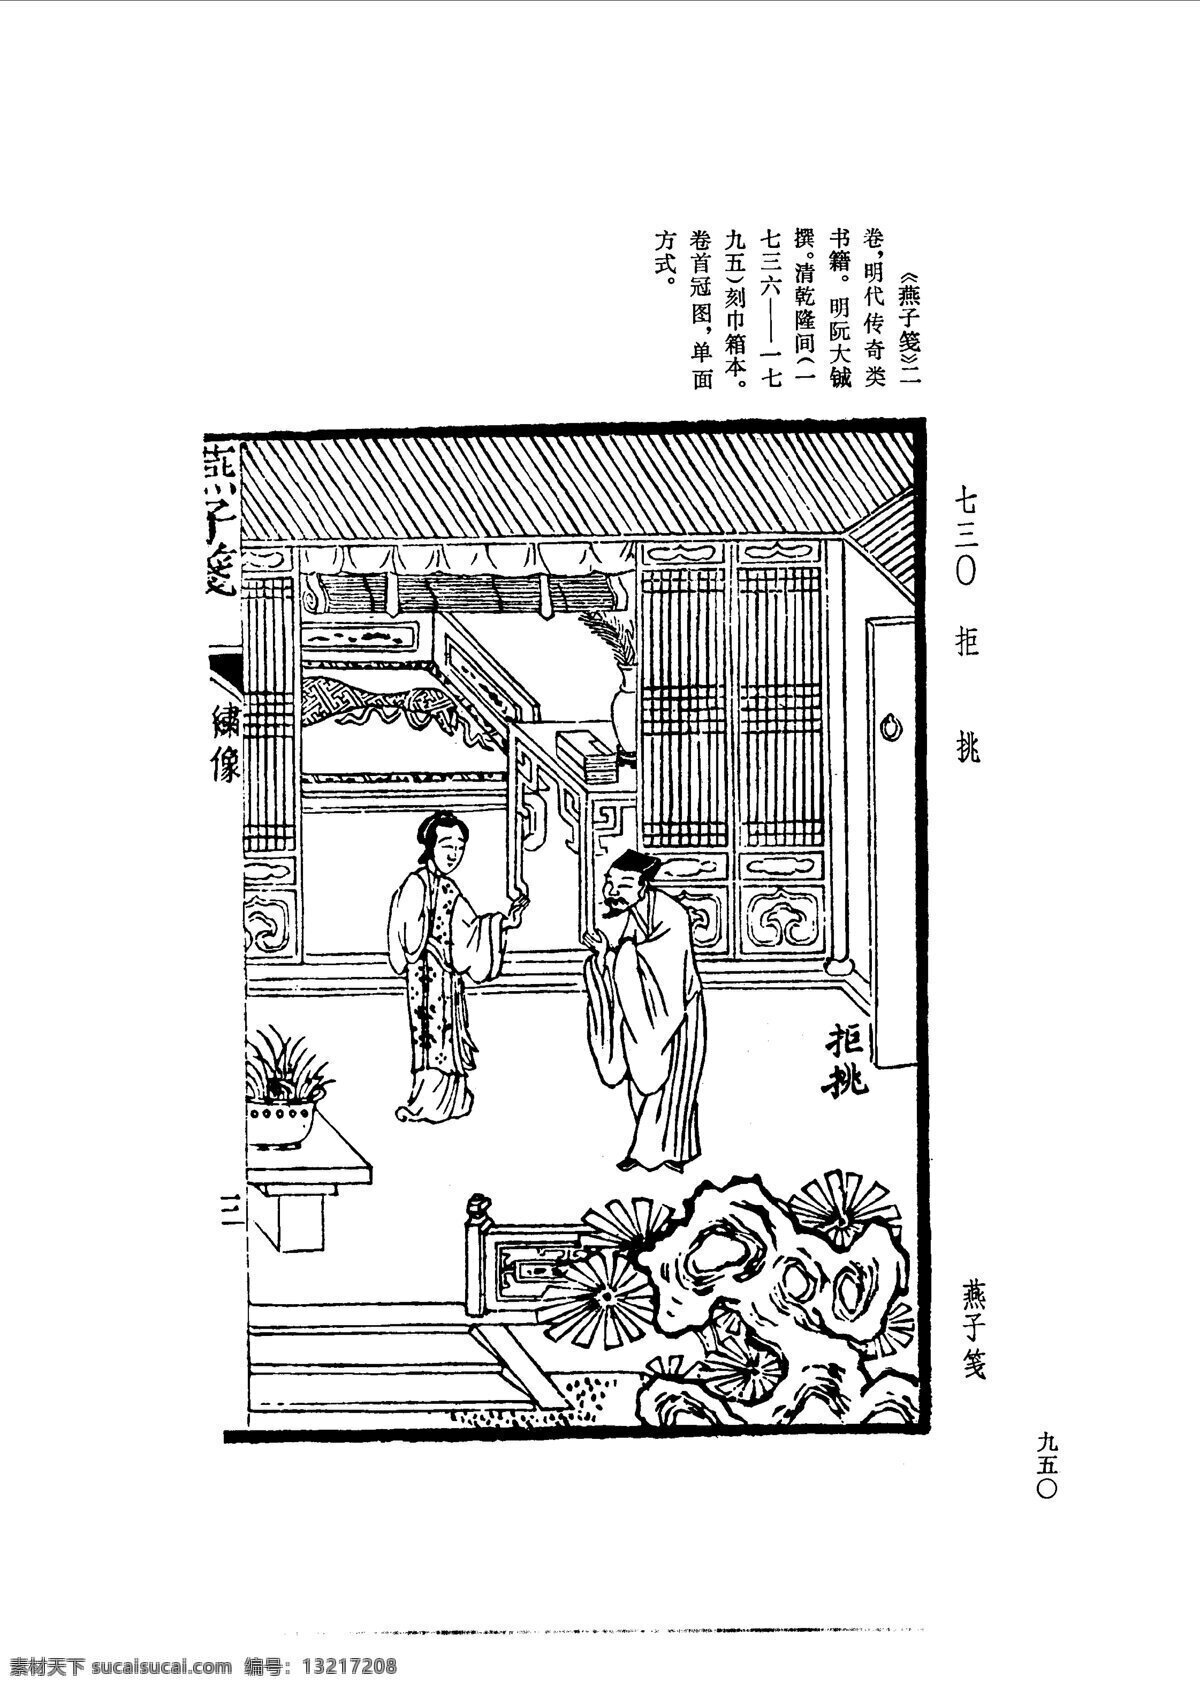 中国 古典文学 版画 选集 上 下册0978 设计素材 版画世界 书画美术 白色